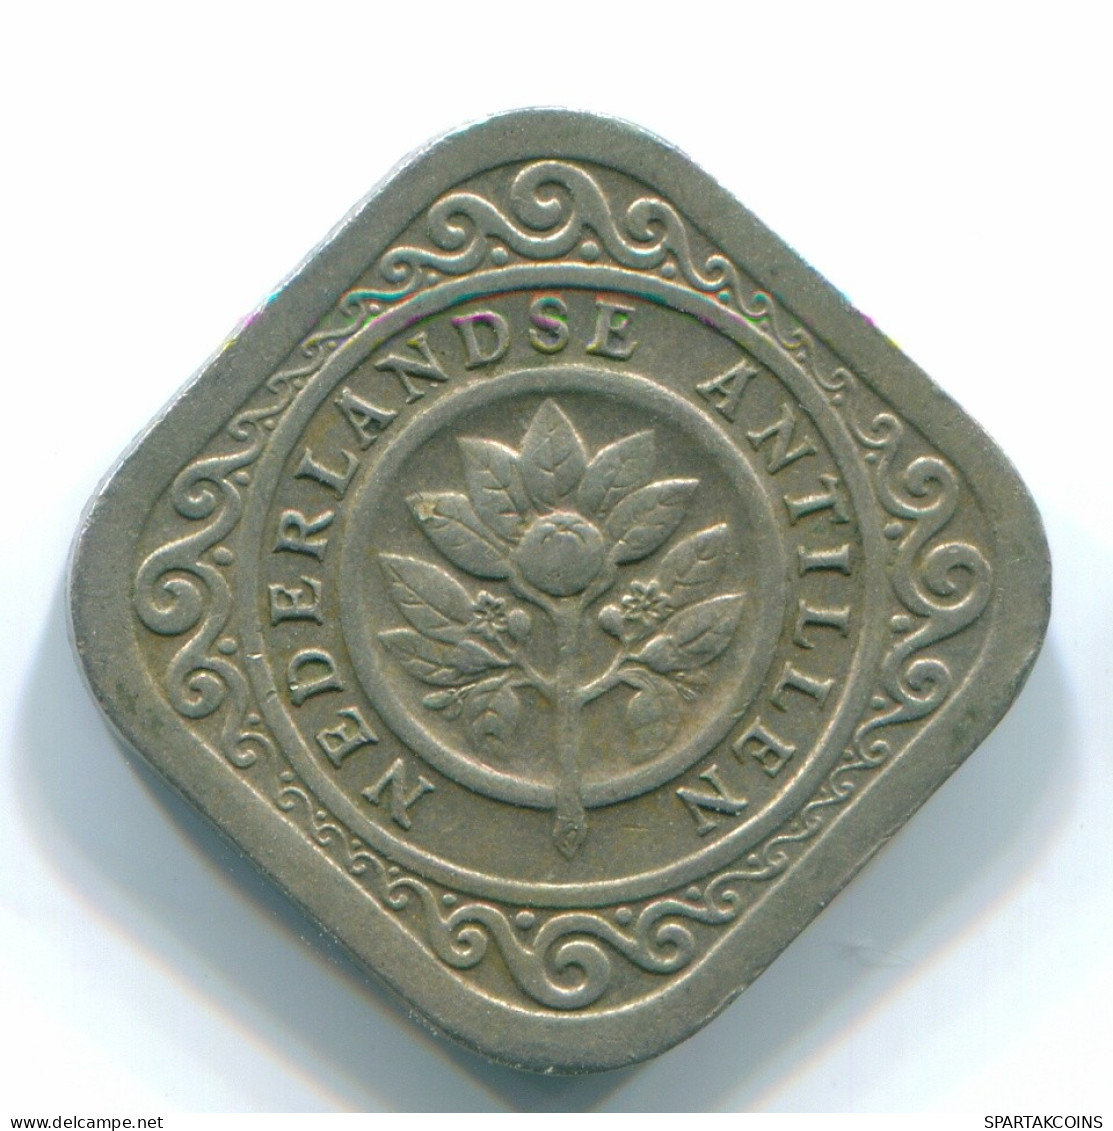 5 CENTS 1967 NIEDERLÄNDISCHE ANTILLEN Nickel Koloniale Münze #S12475.D.A - Niederländische Antillen